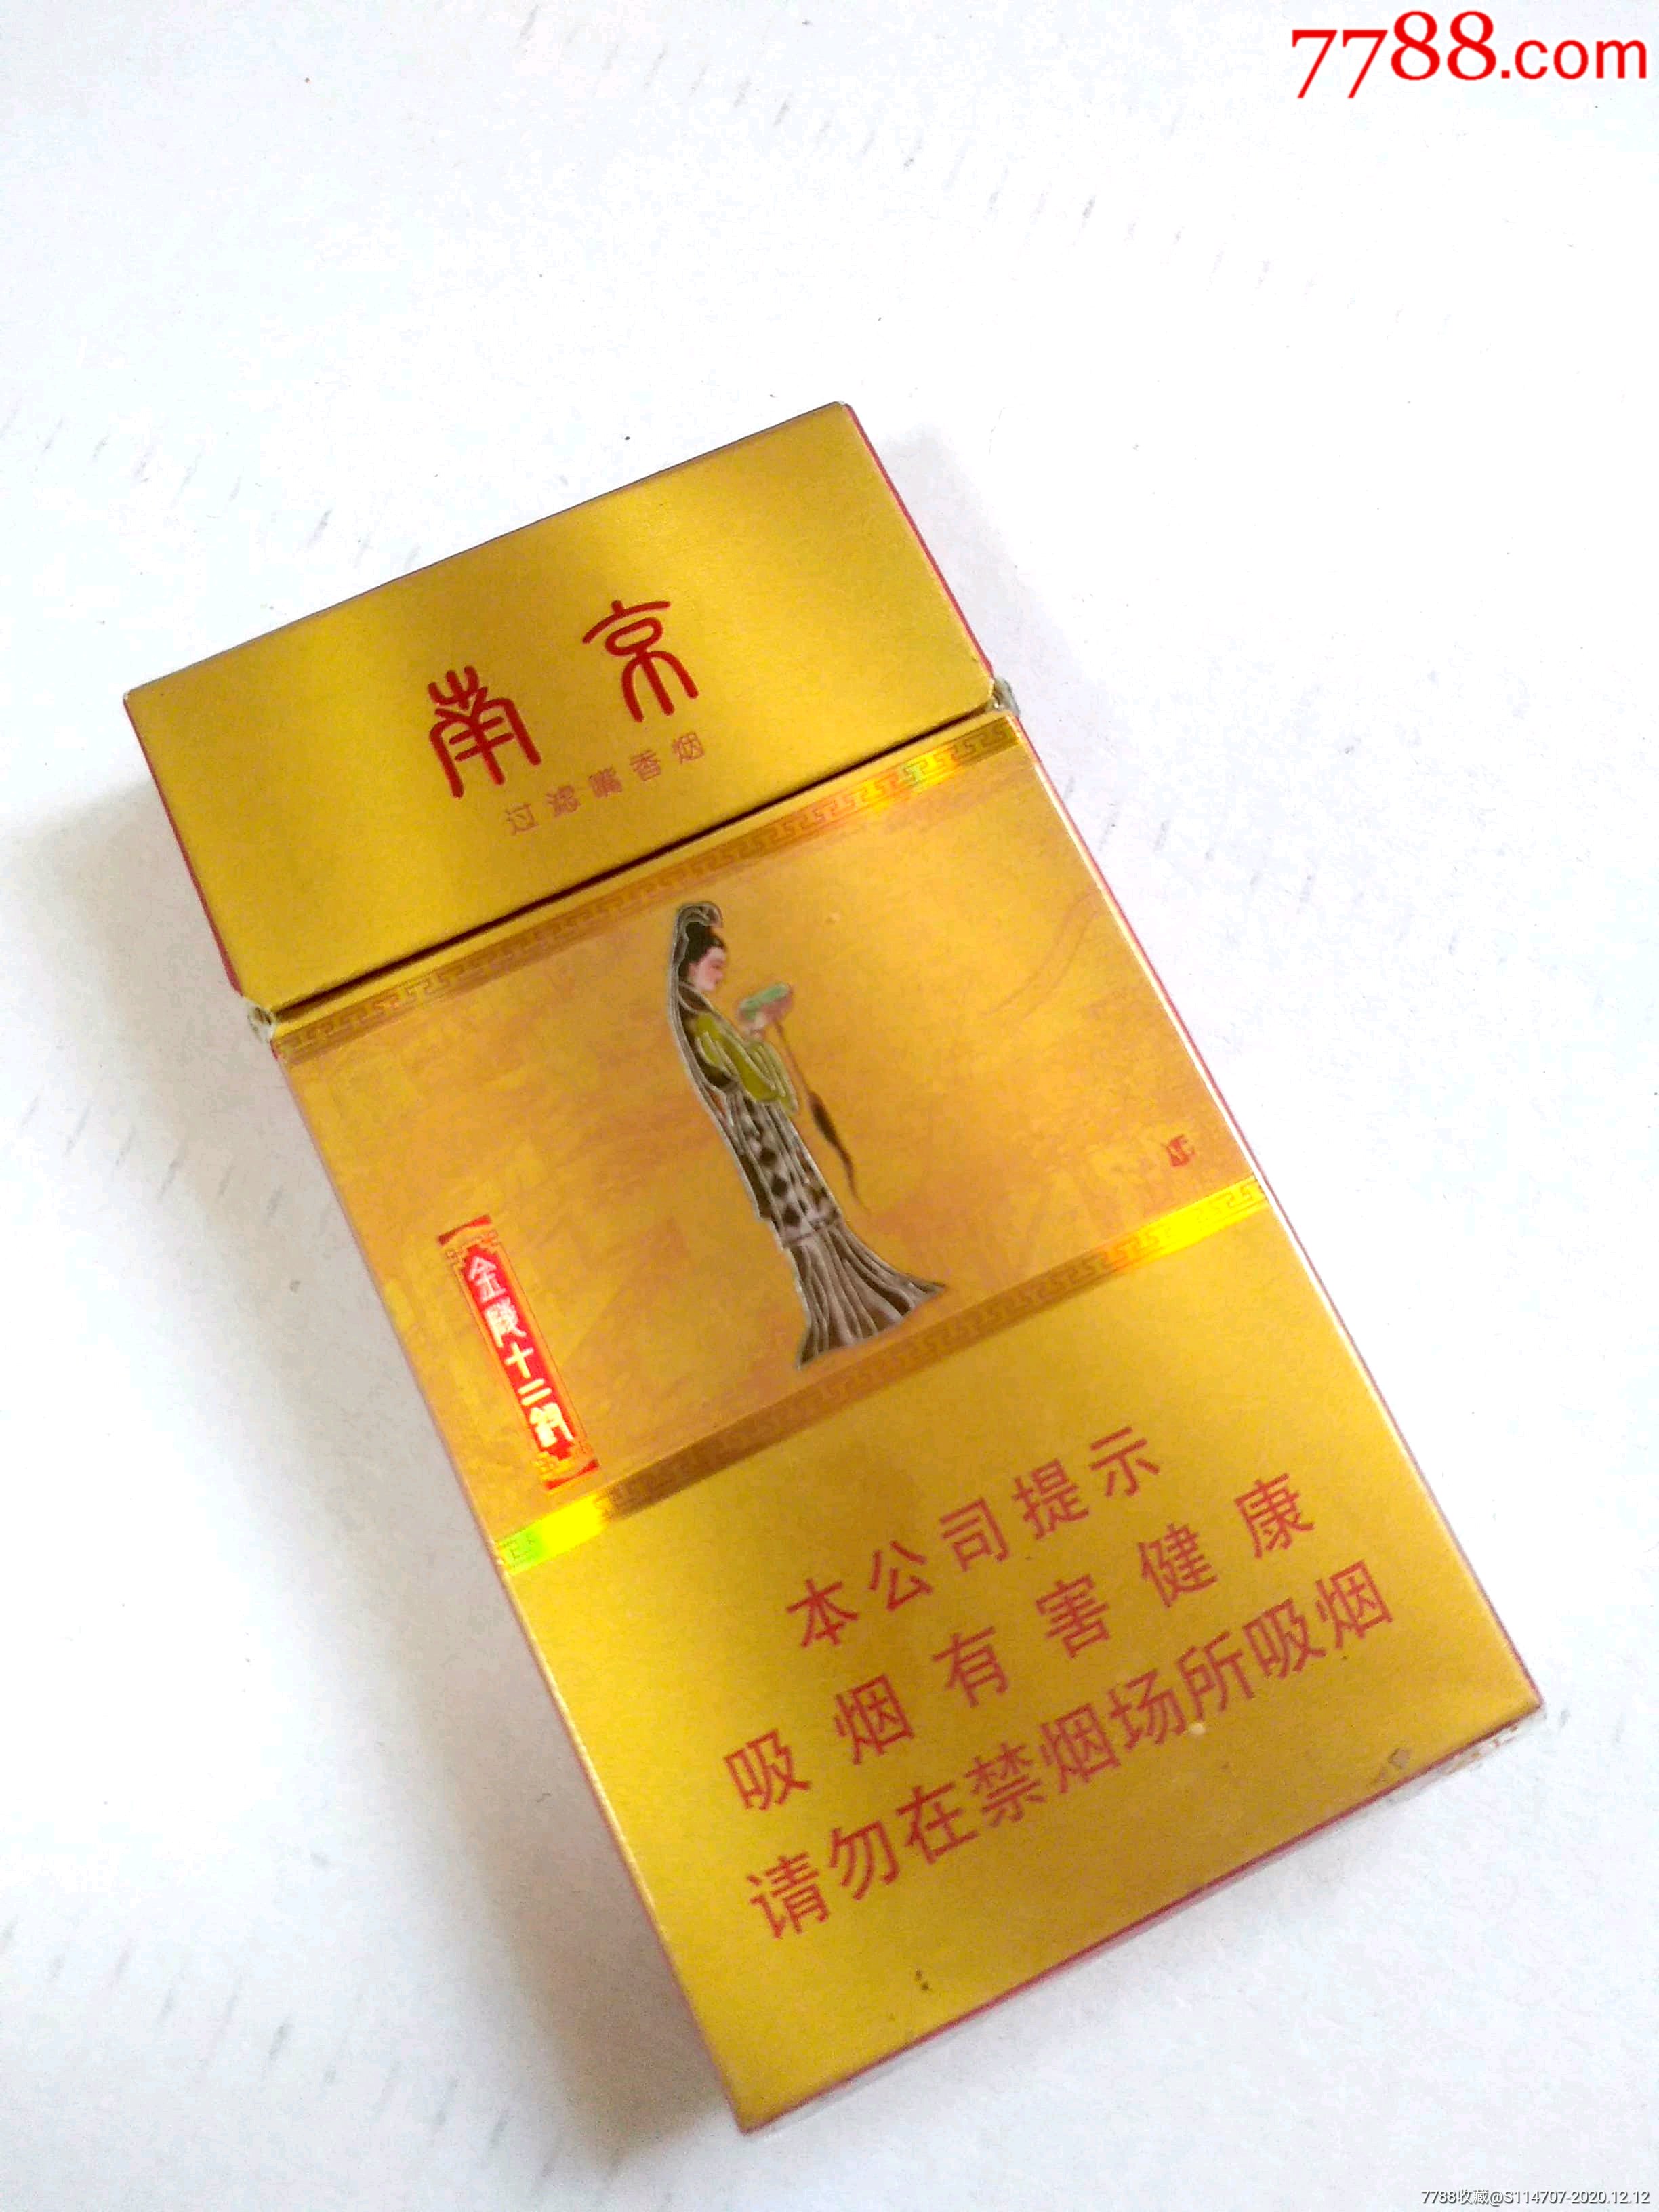 金陵十二钗香烟薄荷味图片